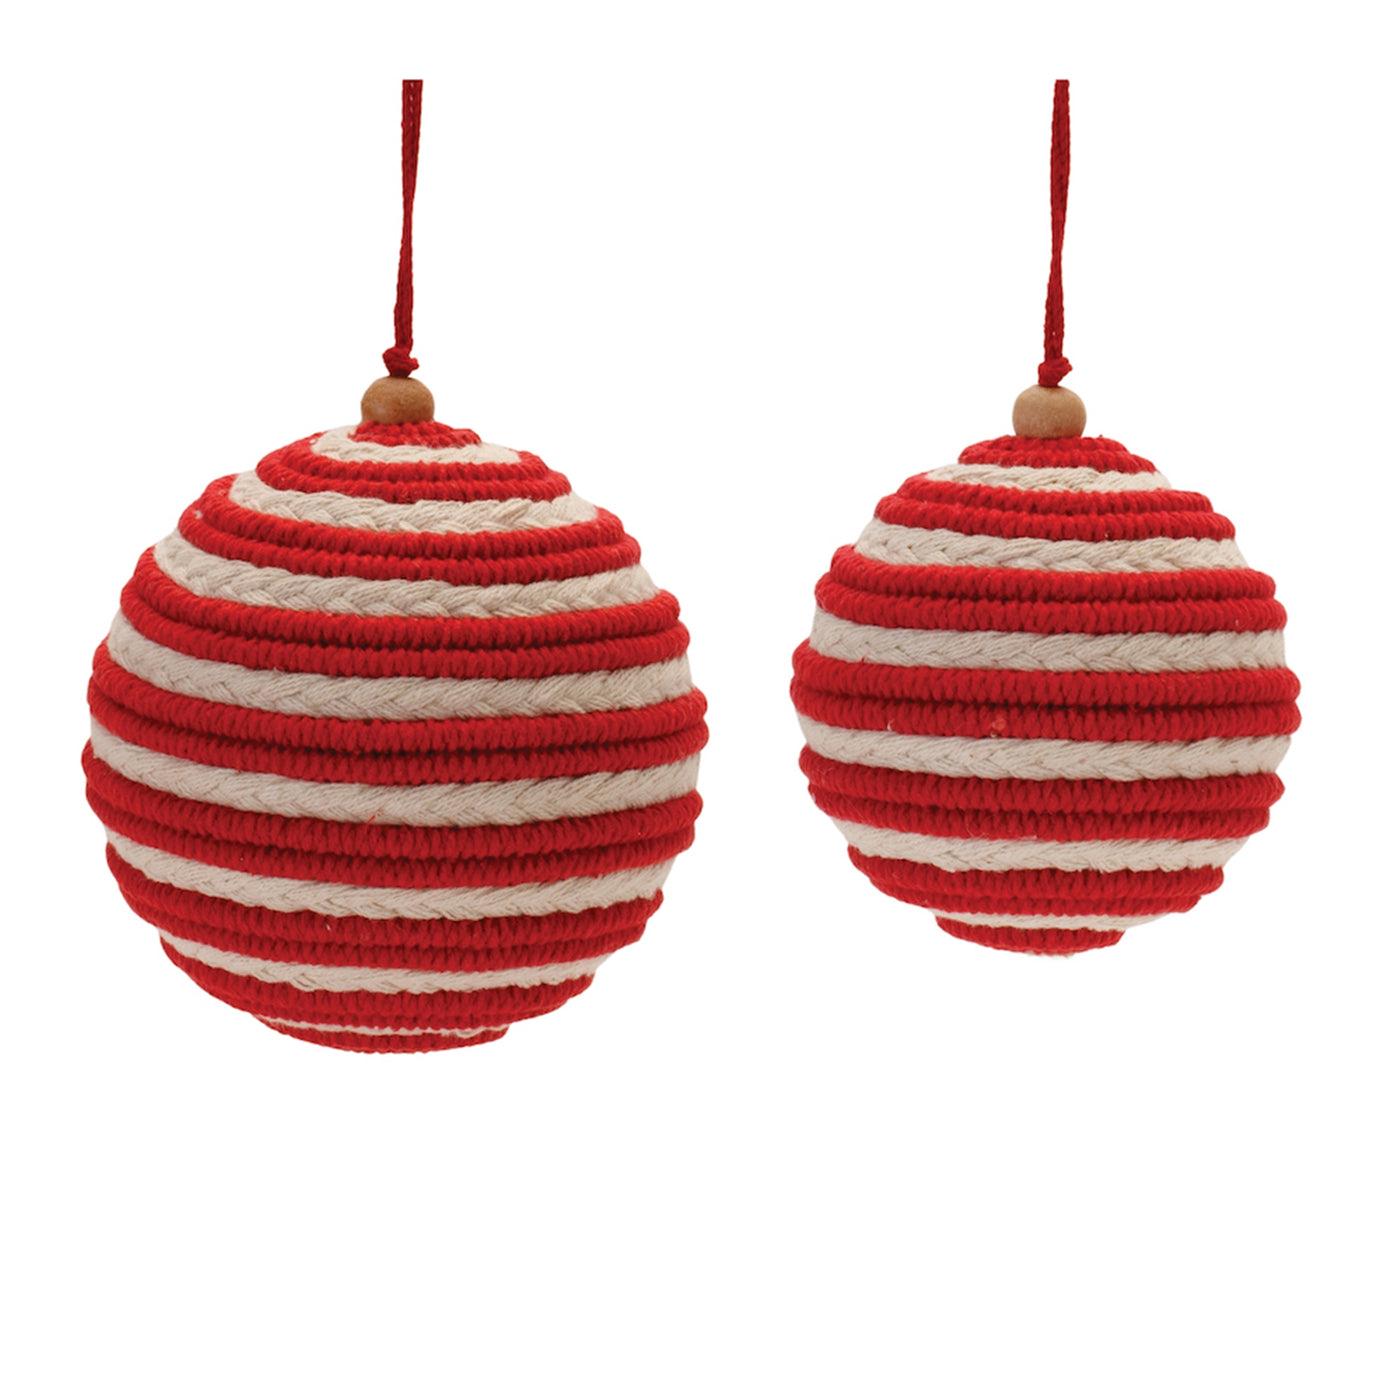 Red & White Striped Cotton Ball Ornament